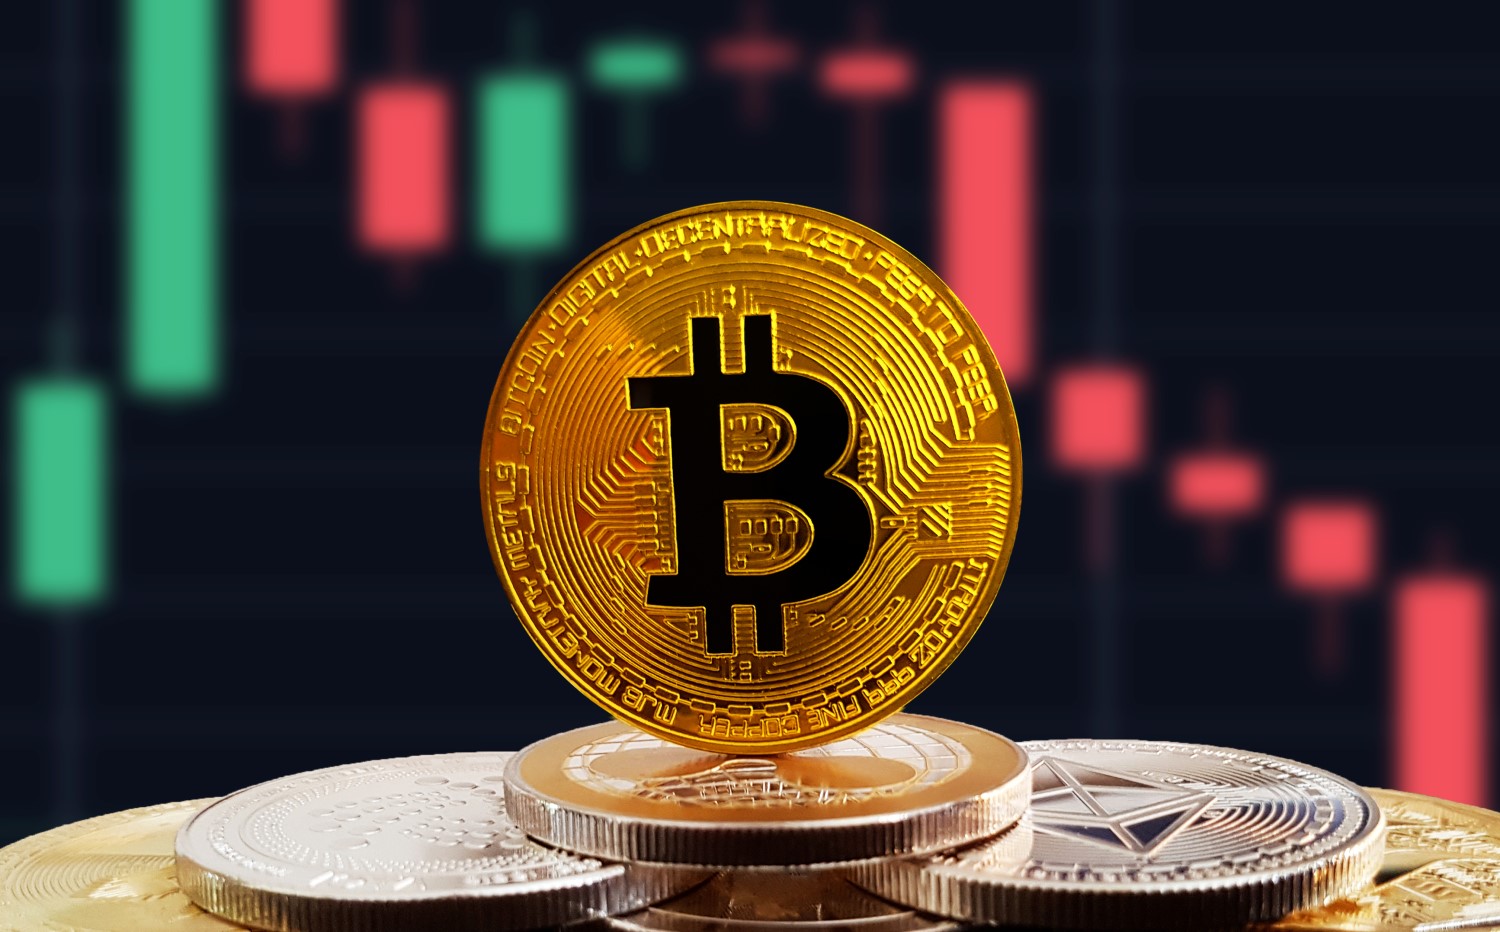 Bitcoin Faces Drop Below $8,000 Despite Beating Price Resistance